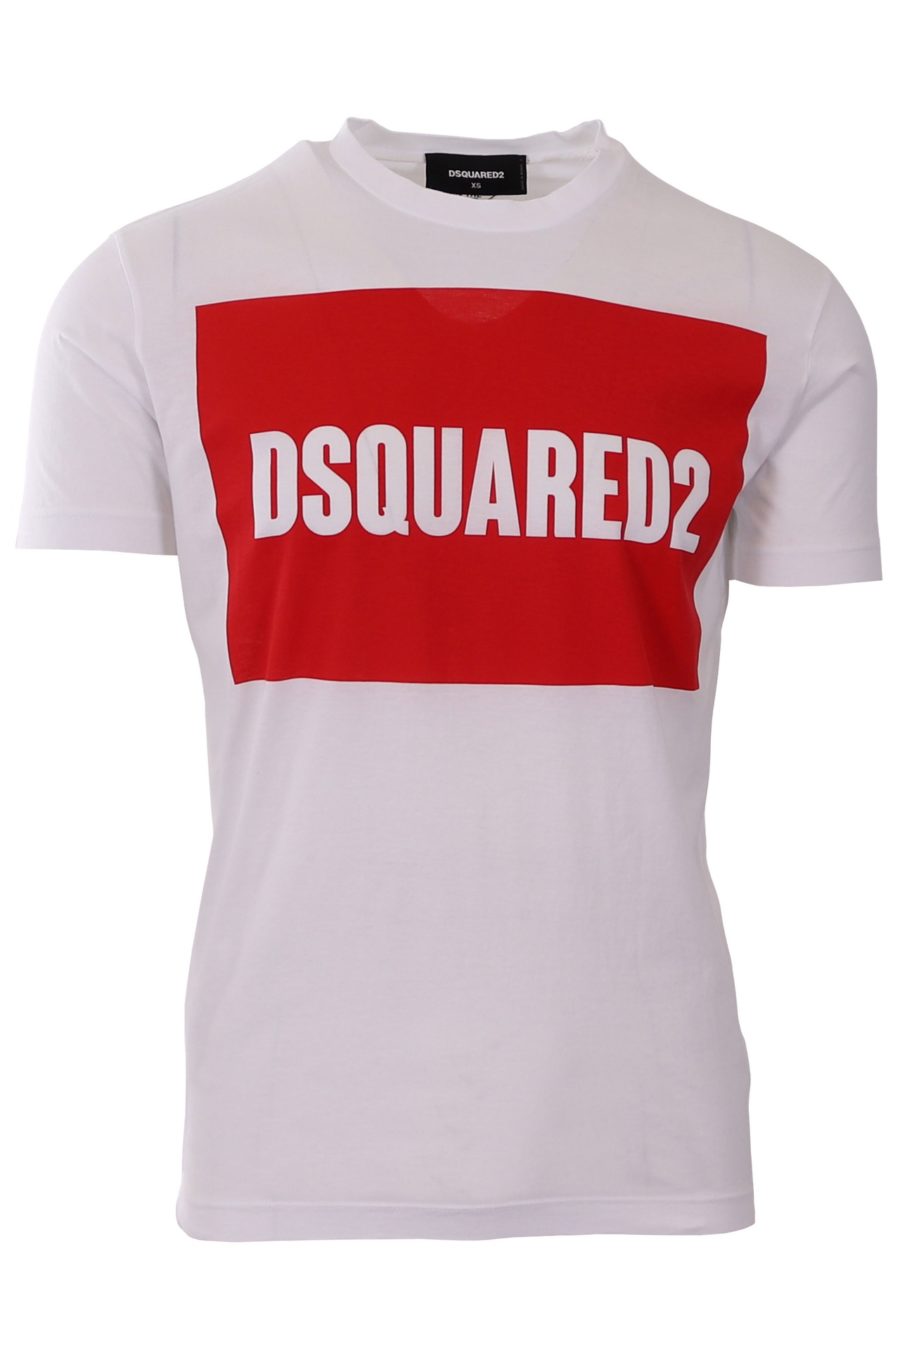 Camiseta Dsquared2 blanca con logo cuadro rojo - 8b8b758e6c984718df449714c3f41330288ff87b